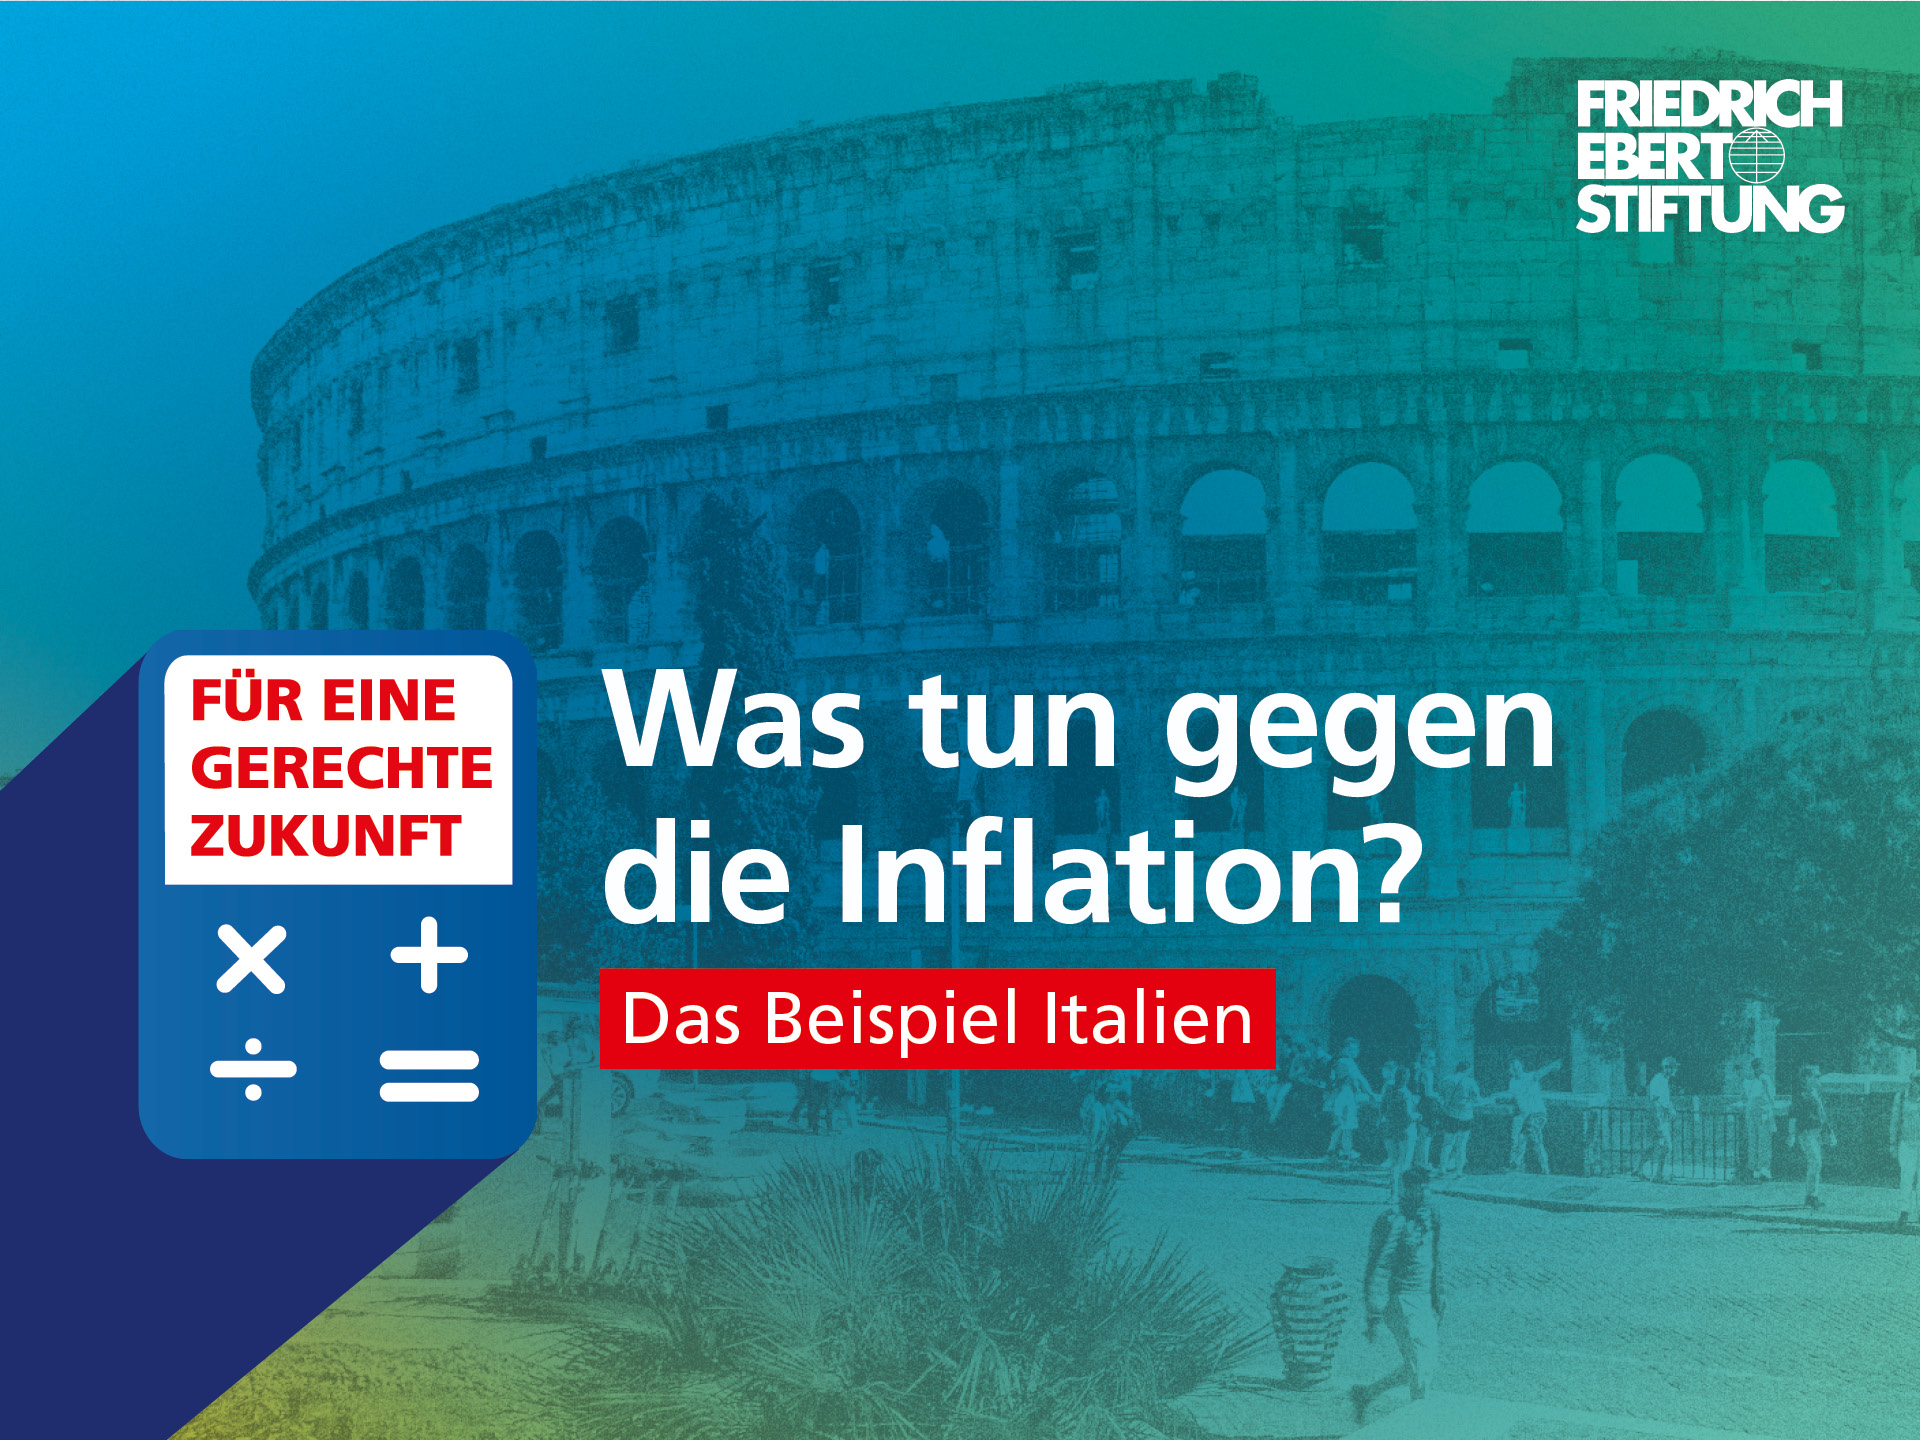 Blau-grün-gelb verwischter Hintergrund. Darauf der weiße Schriftzug "Was tun gegen die Inflation? Das Beispiel Italien".